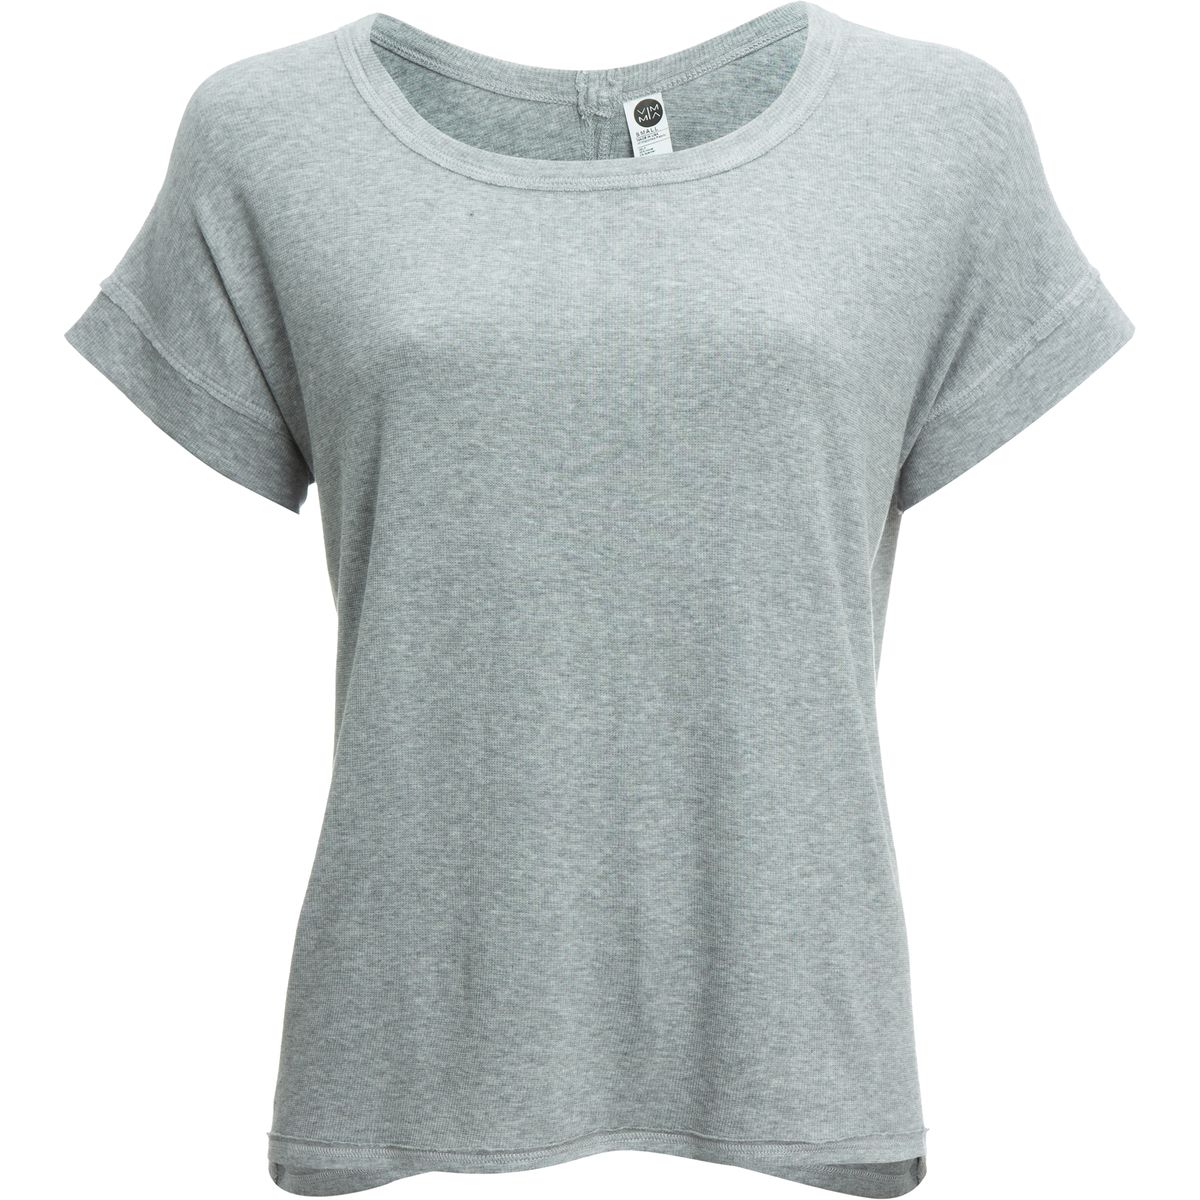 Vimmia Serenity Split Back T-Shirt - Women's | eBay